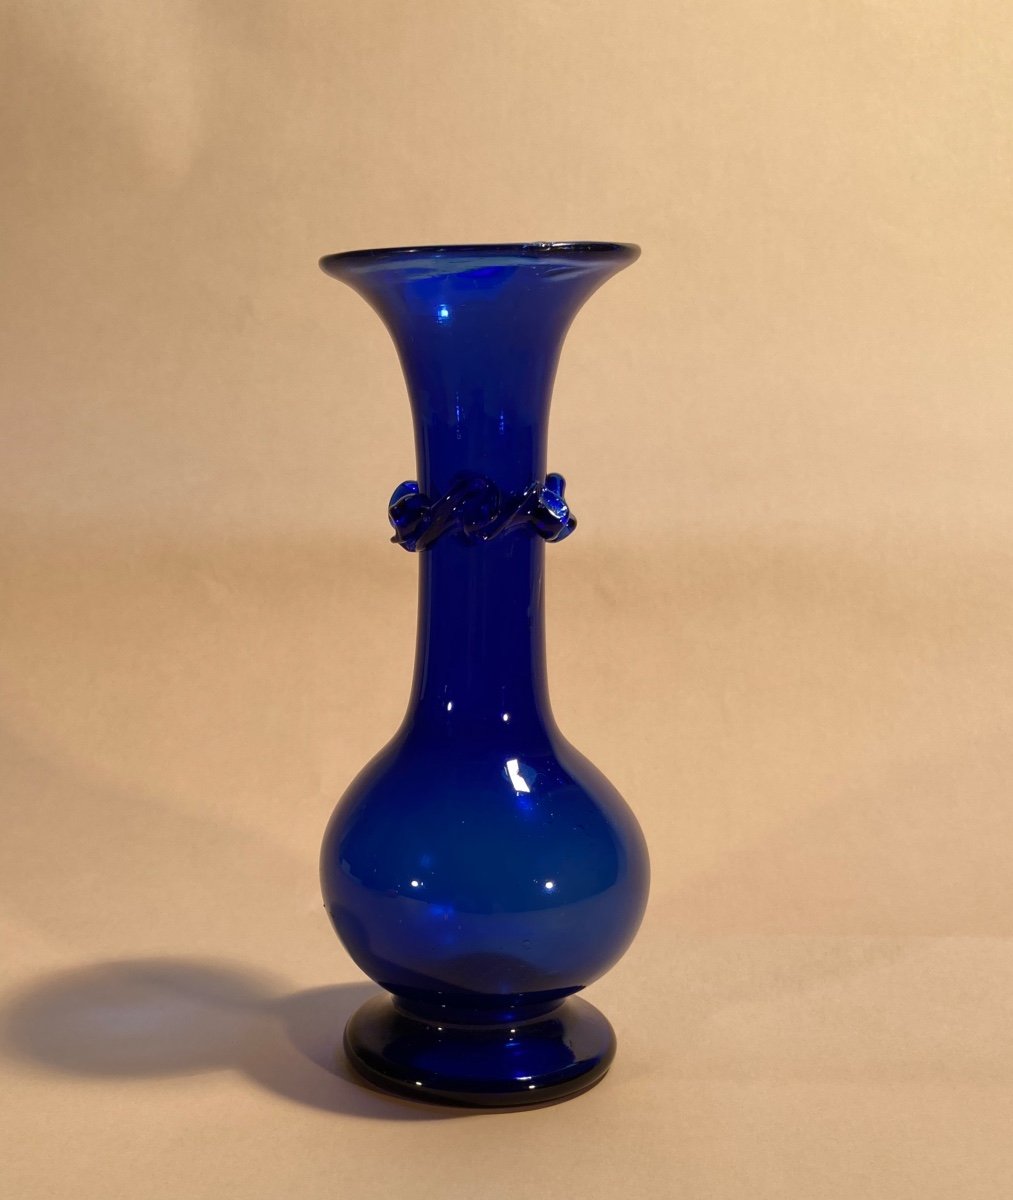 Small Soliflore Vase In Intense Blue Glass - Late 18th Century Glassware-photo-8